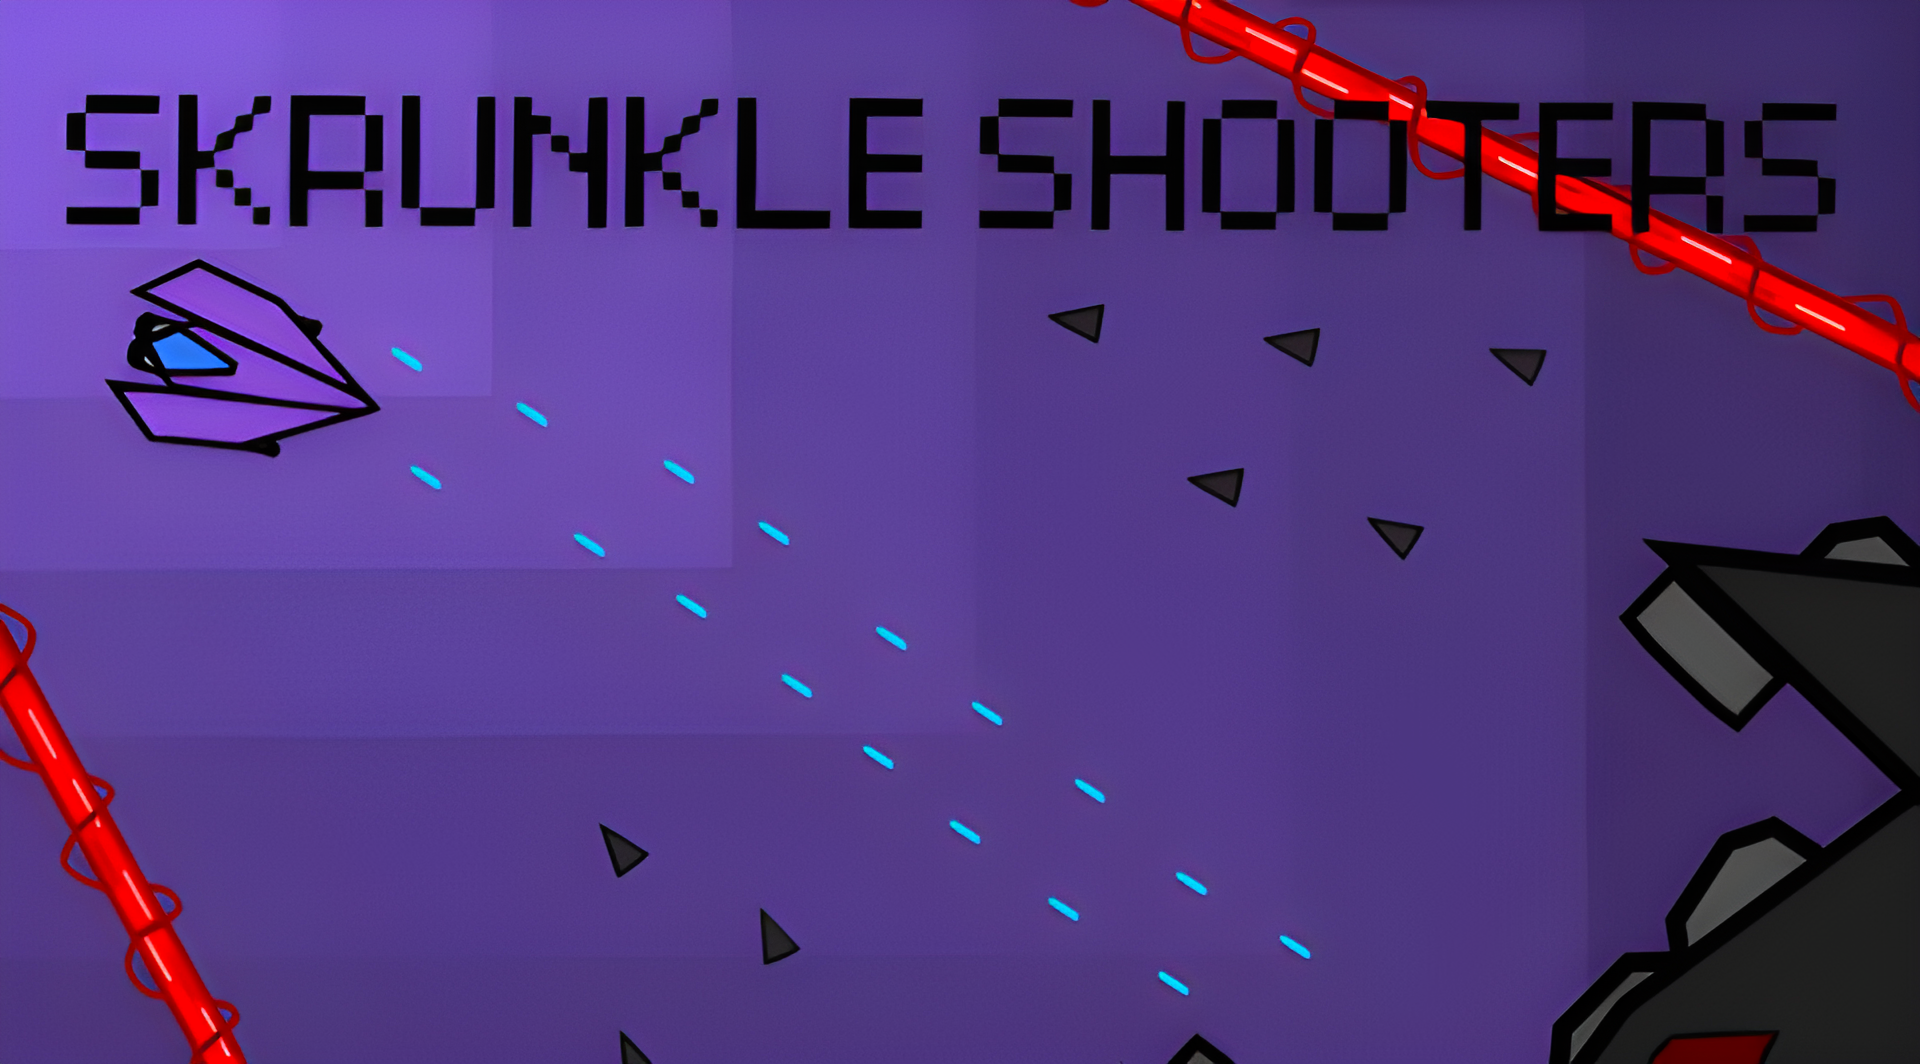 Skrunkle Shooters